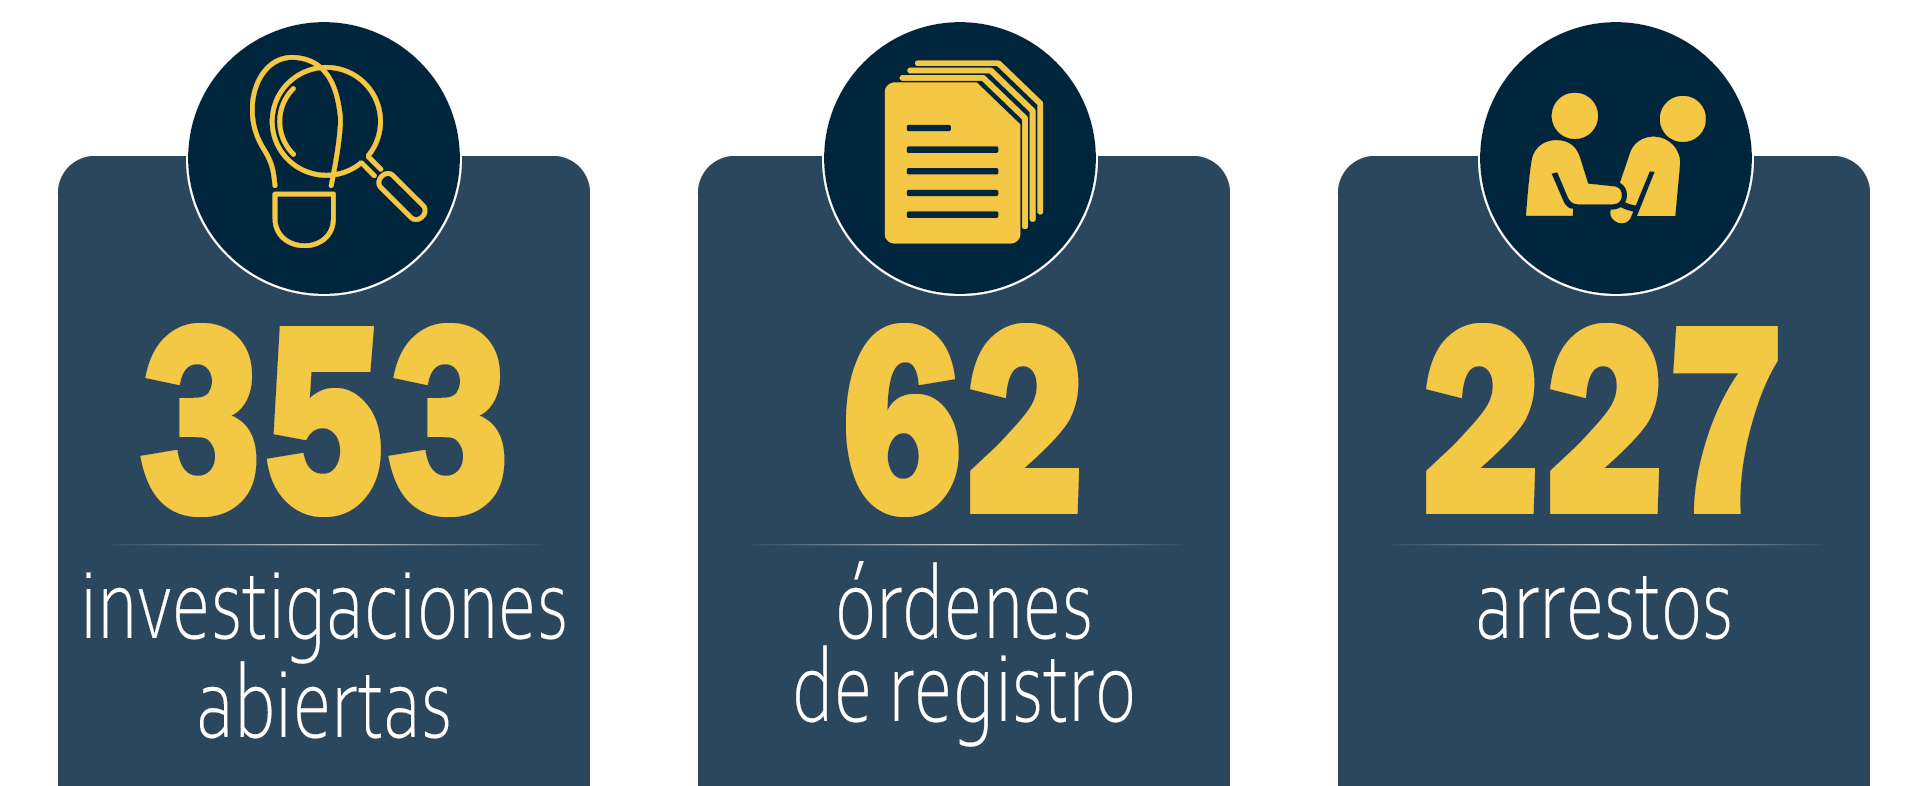 Operación Sin Rastro, resultados durante el año fiscal 2020: 353 investigaciones abiertas; 62 órdenes de registro; 227 arrestos.